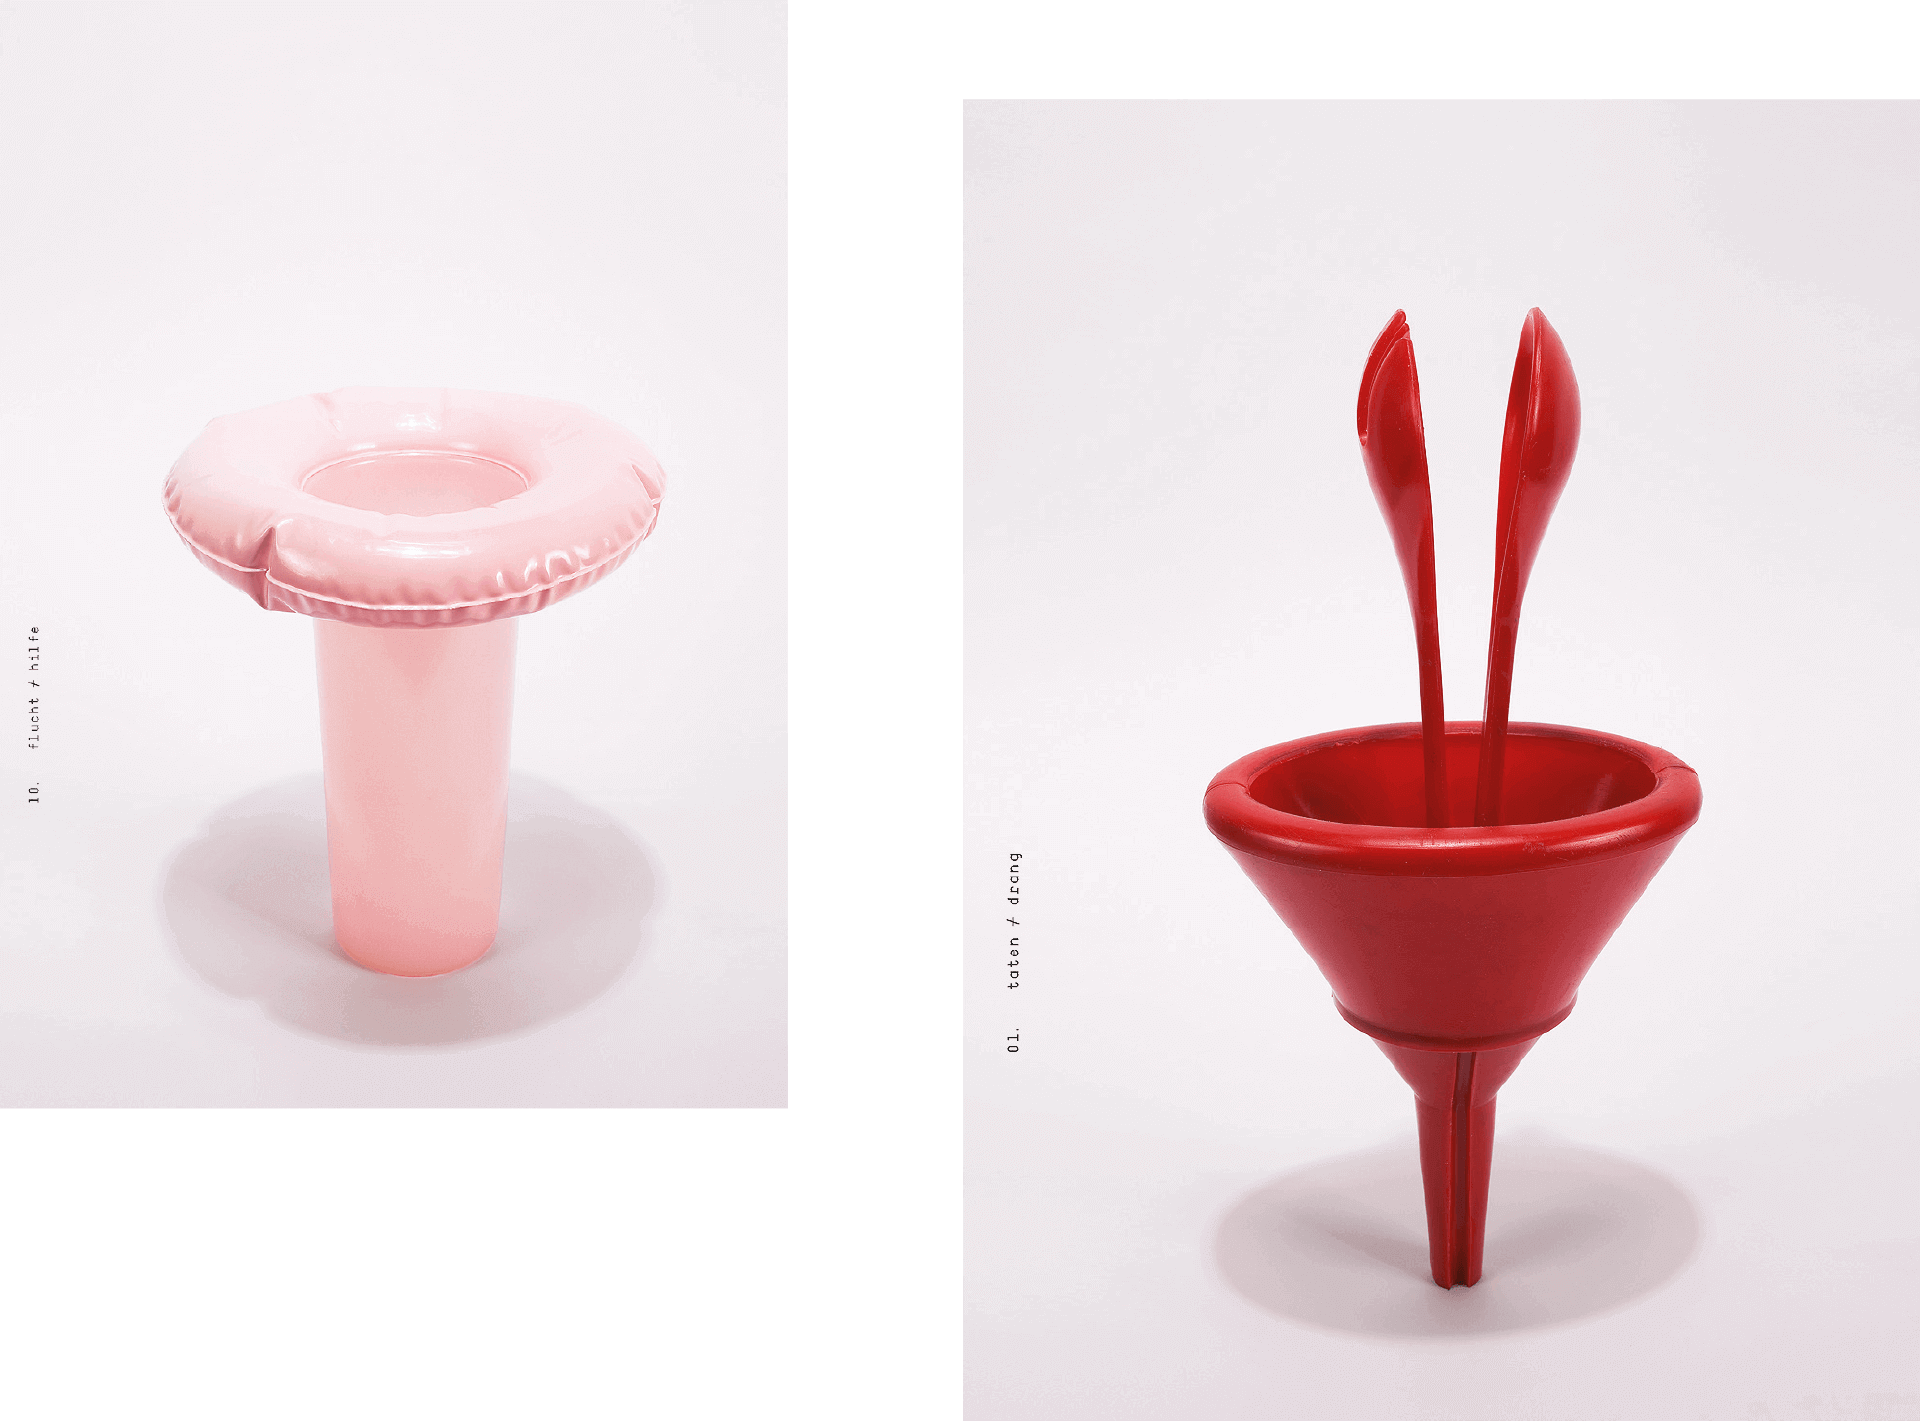 Fotografien von einem rosa und einem roten Objekt aus dem Kunstprojekt von Gabrielle Voisard